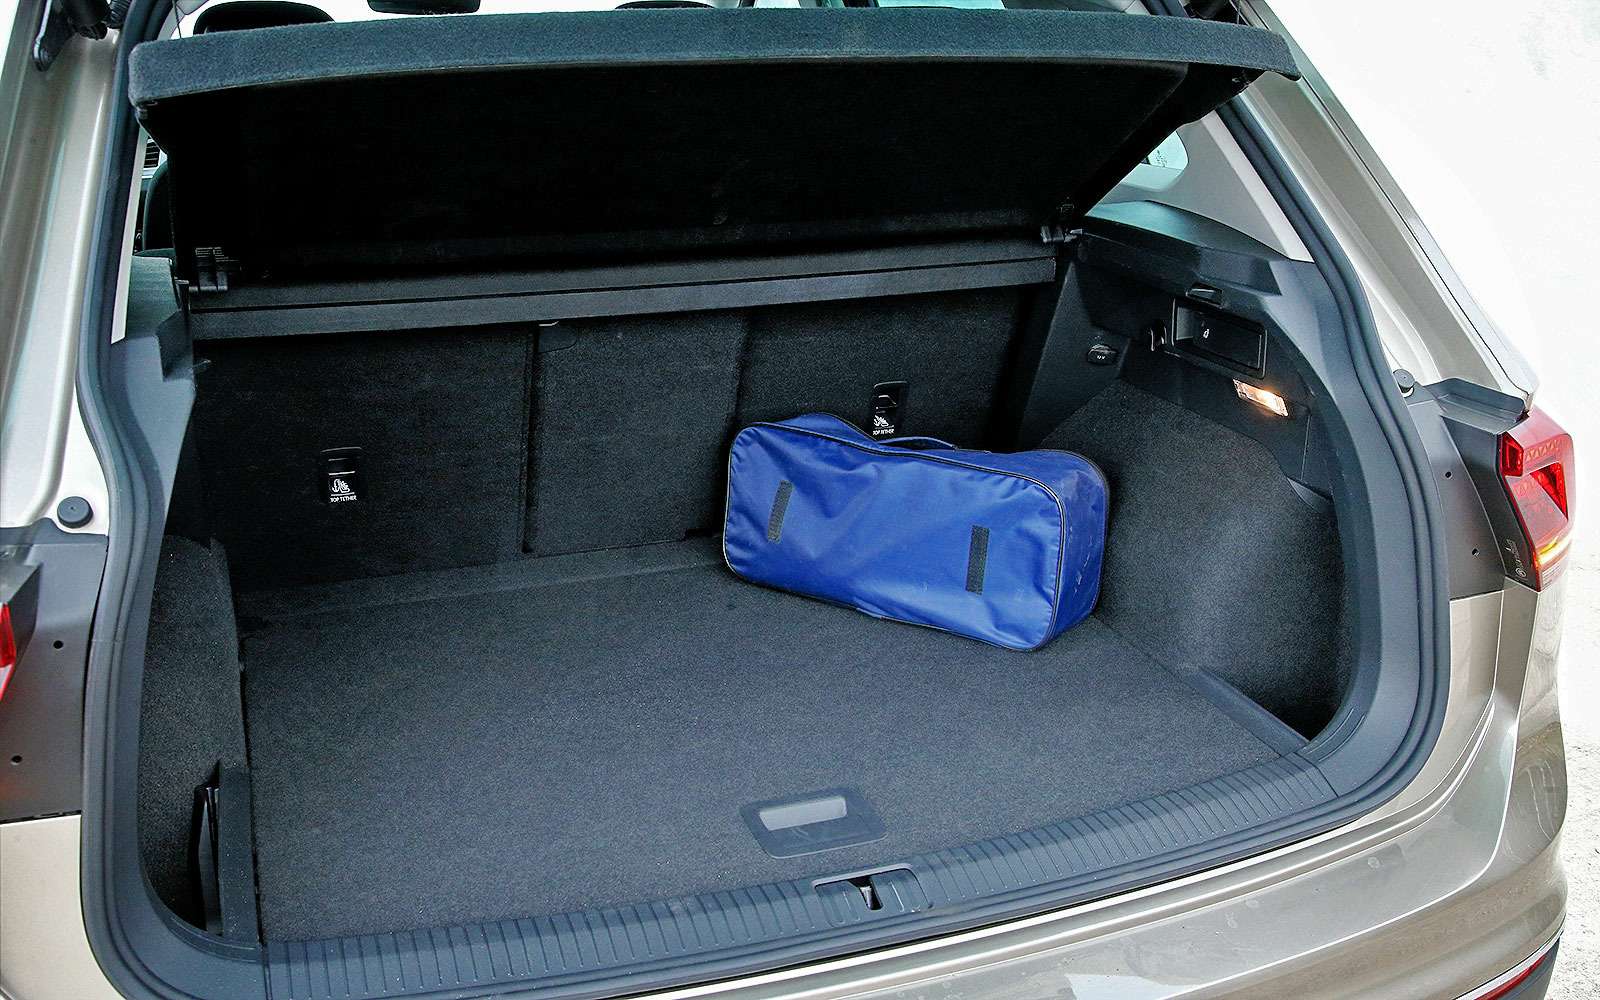 Багажник порадовал правильной формой и вместительностью — его объем, по нашим замерам, 356 литров.